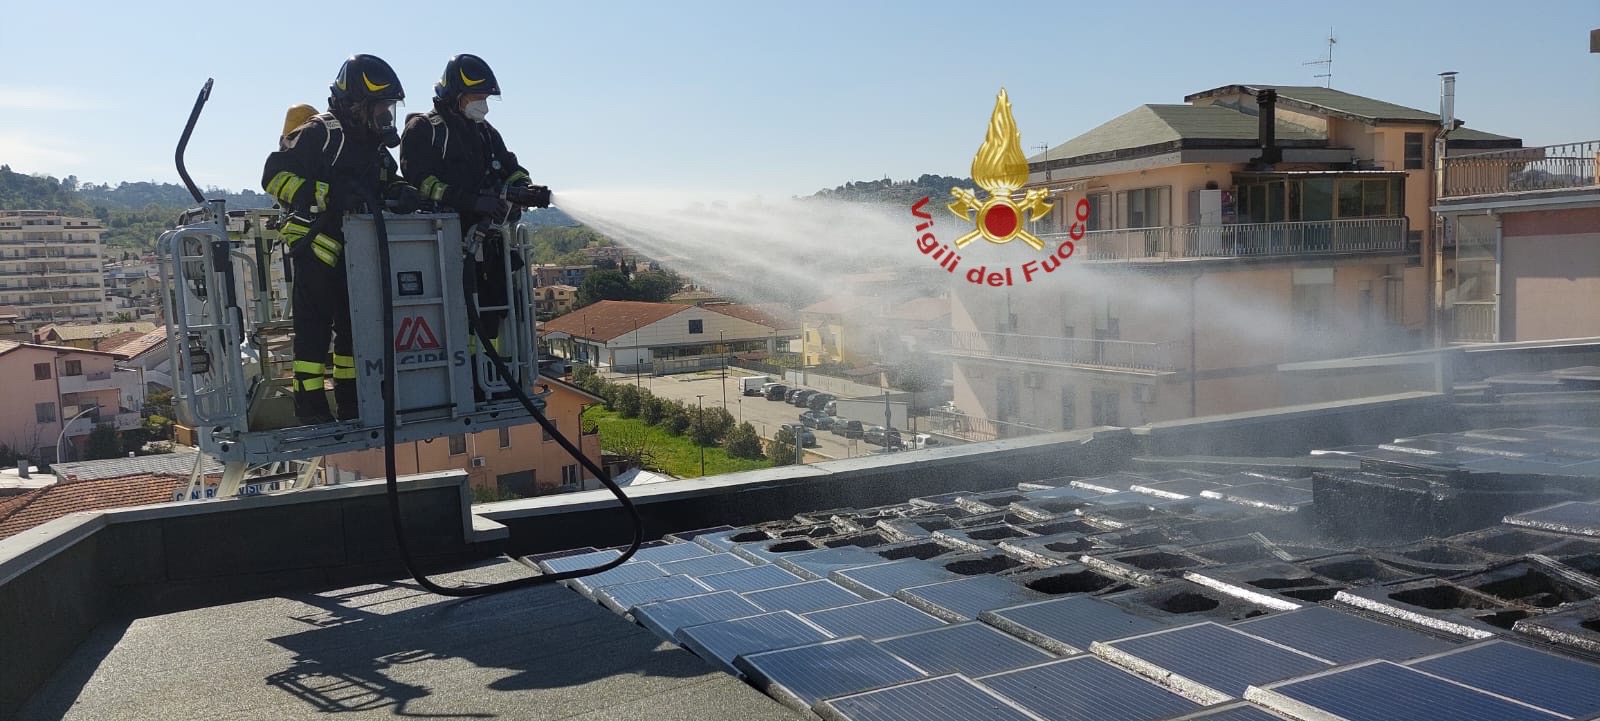 A fuoco i pannelli fotovoltaici di un tetto, a Pescara